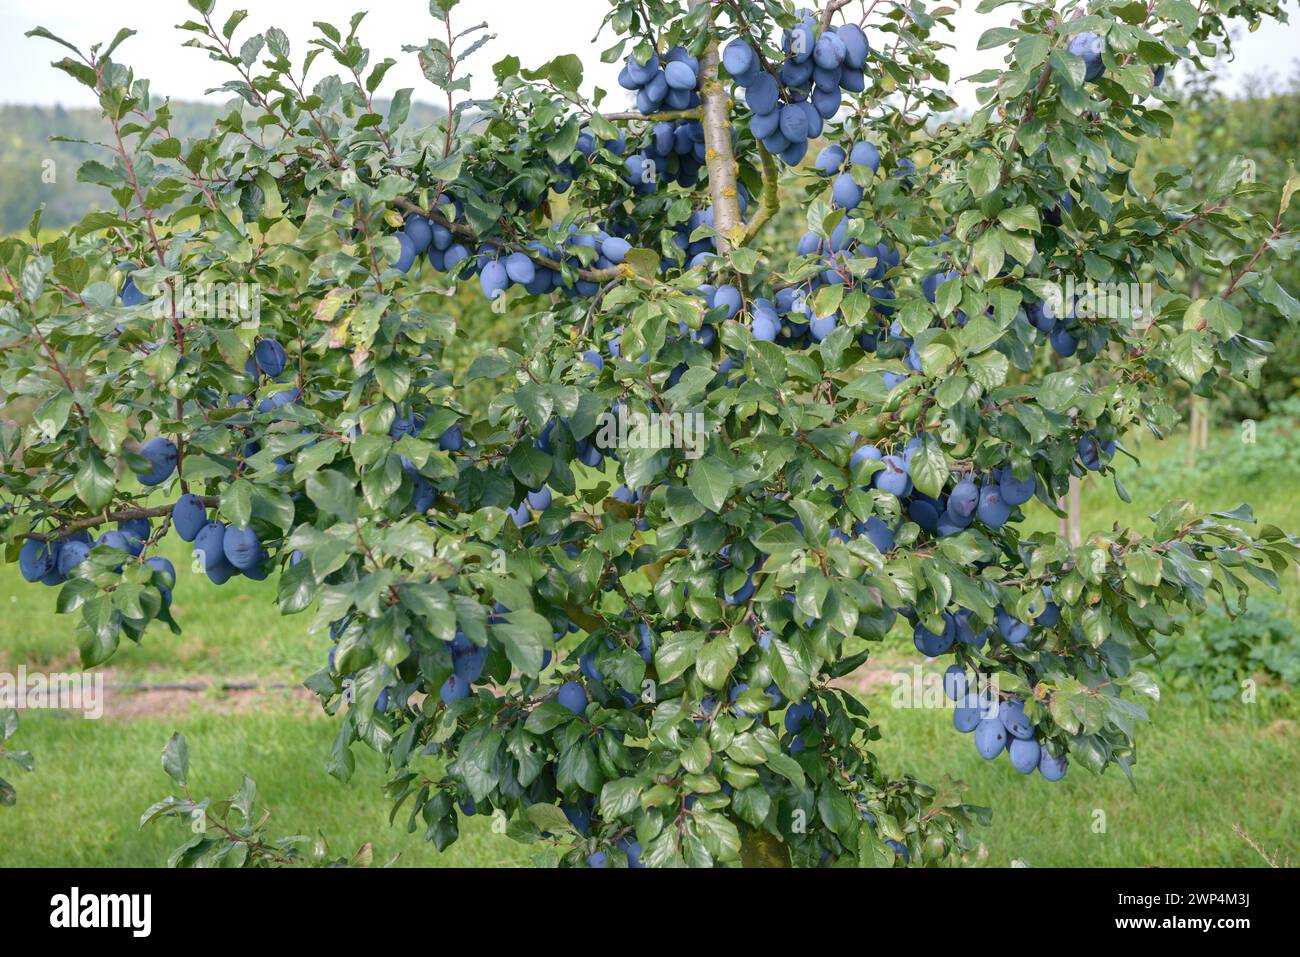 Plum (Prunus domestica 'Topend Plus') Stock Photo